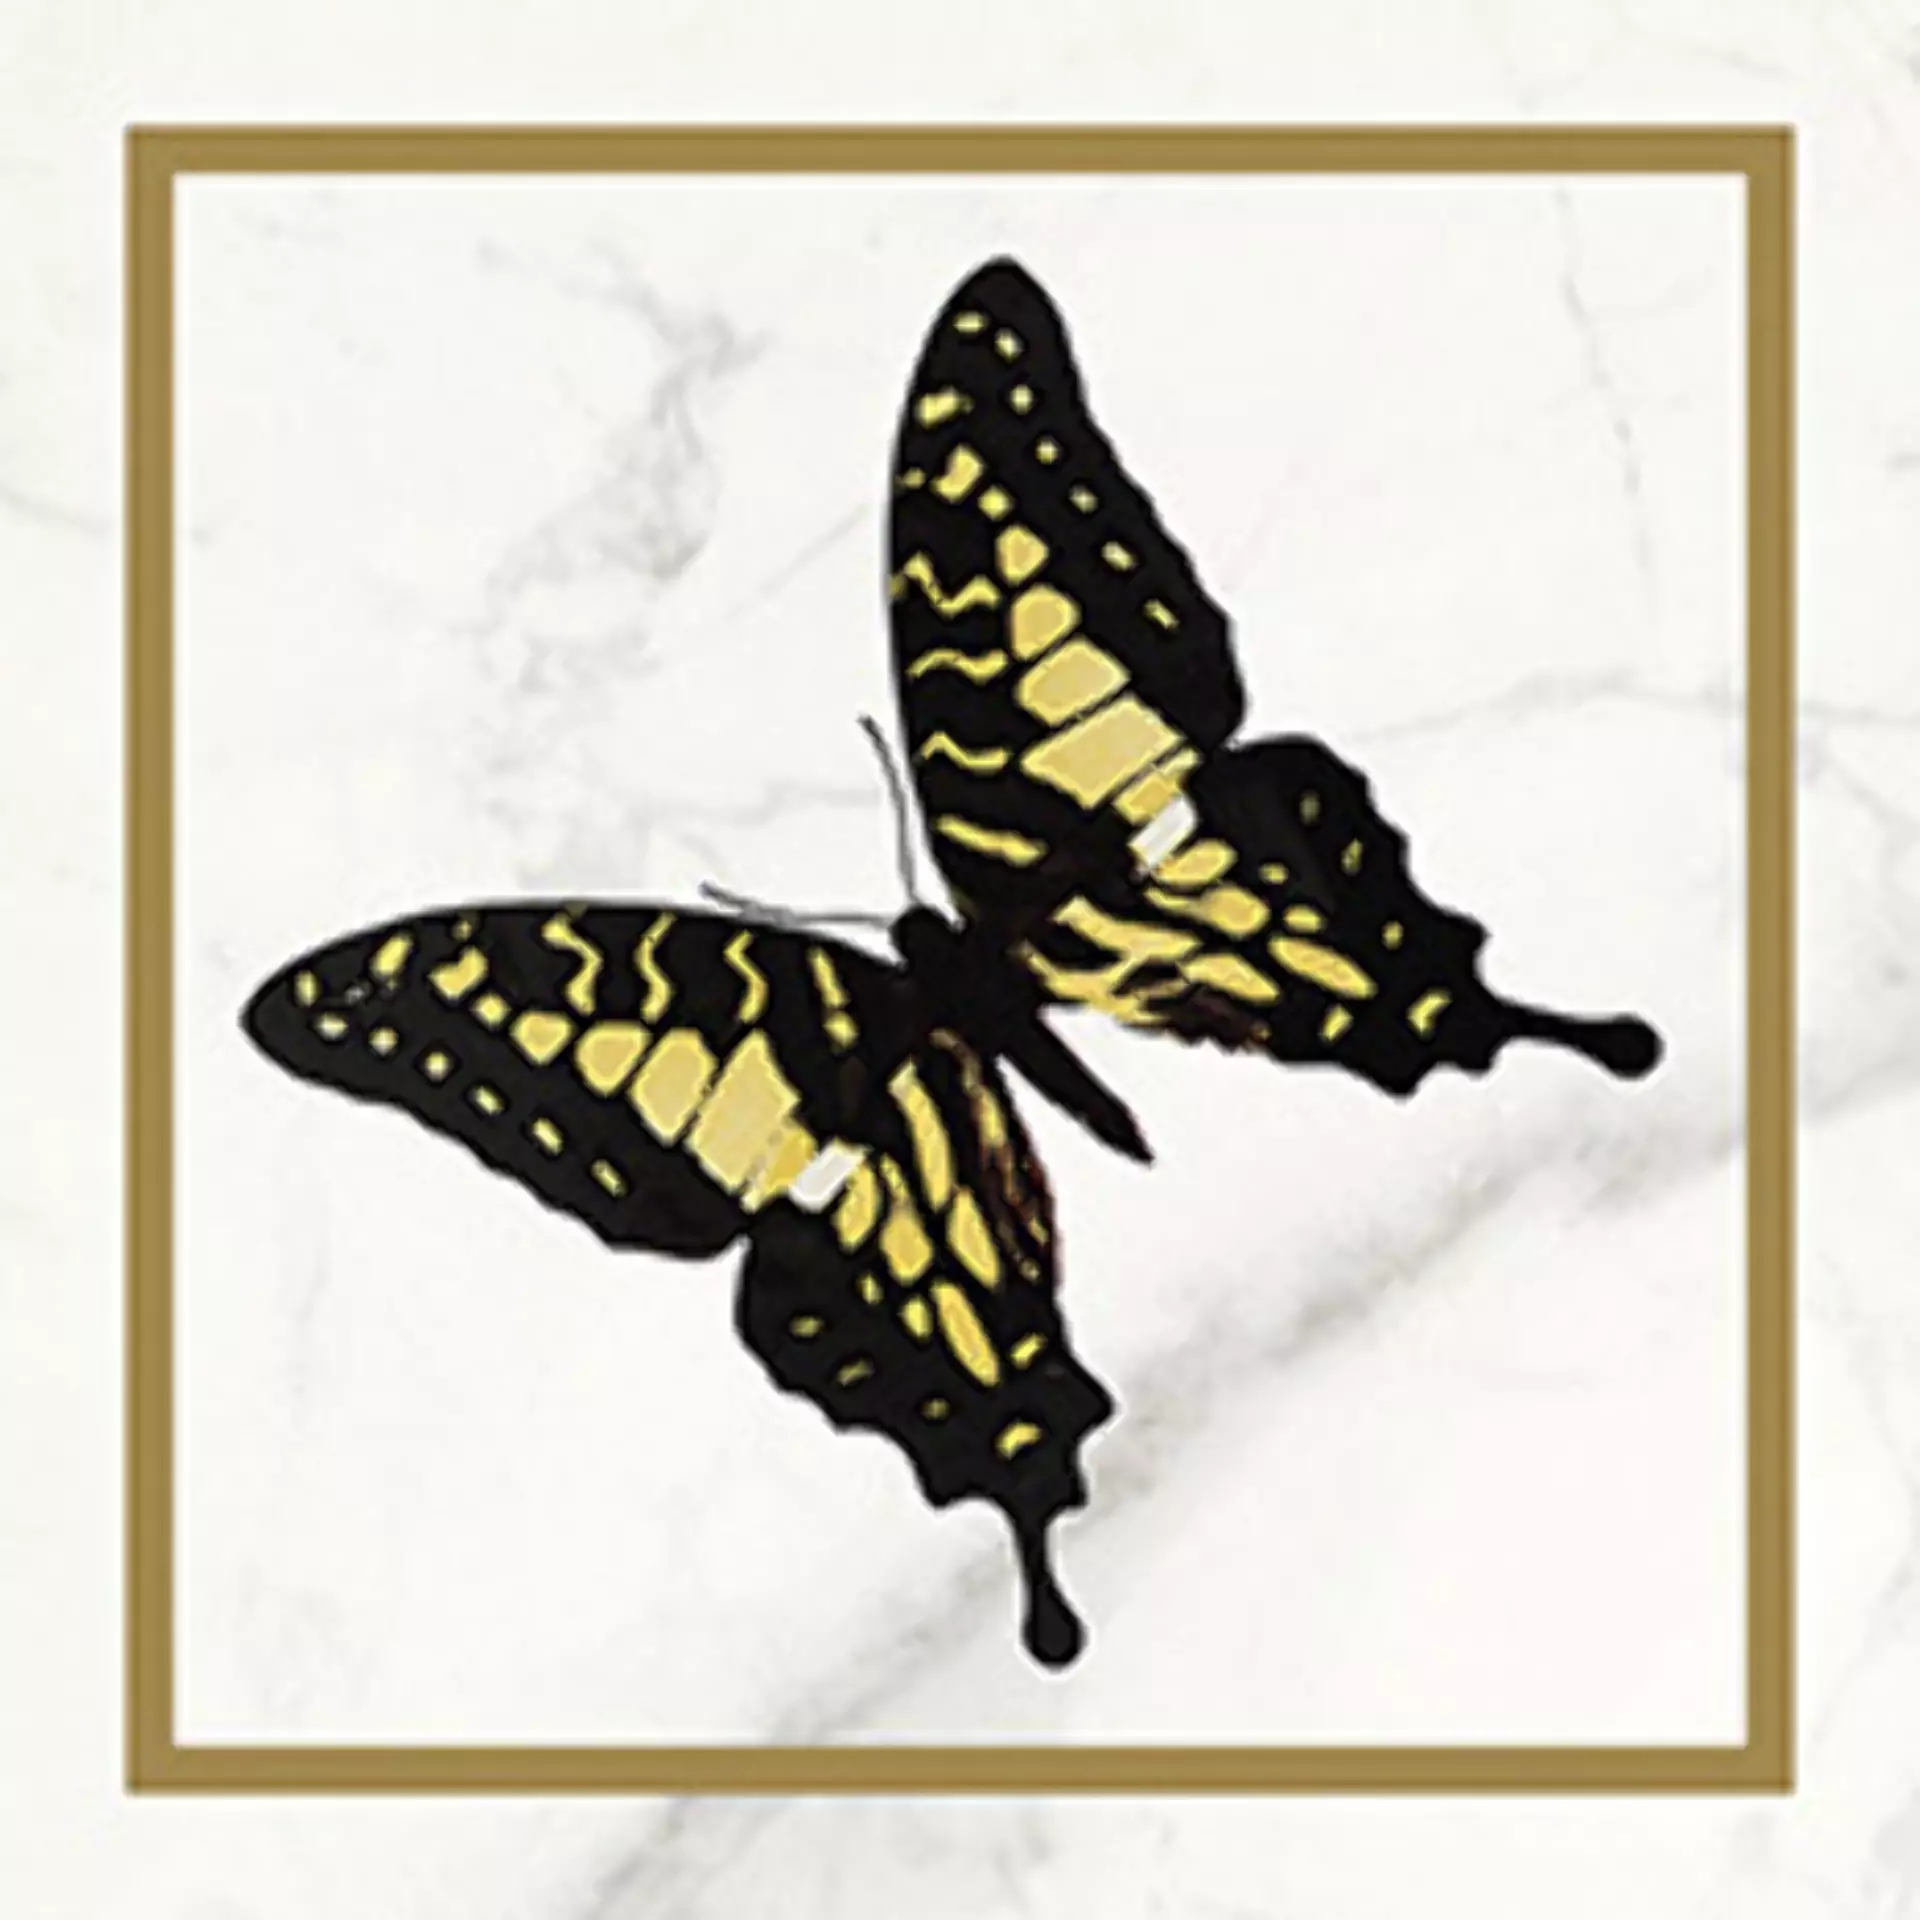 Wandfliese Villeroy & Boch Victorian White - Gold Glossy White - Gold 1222-MK0F glaenzend 20x20cm Dekor Butterfly 45 rektifiziert 10mm